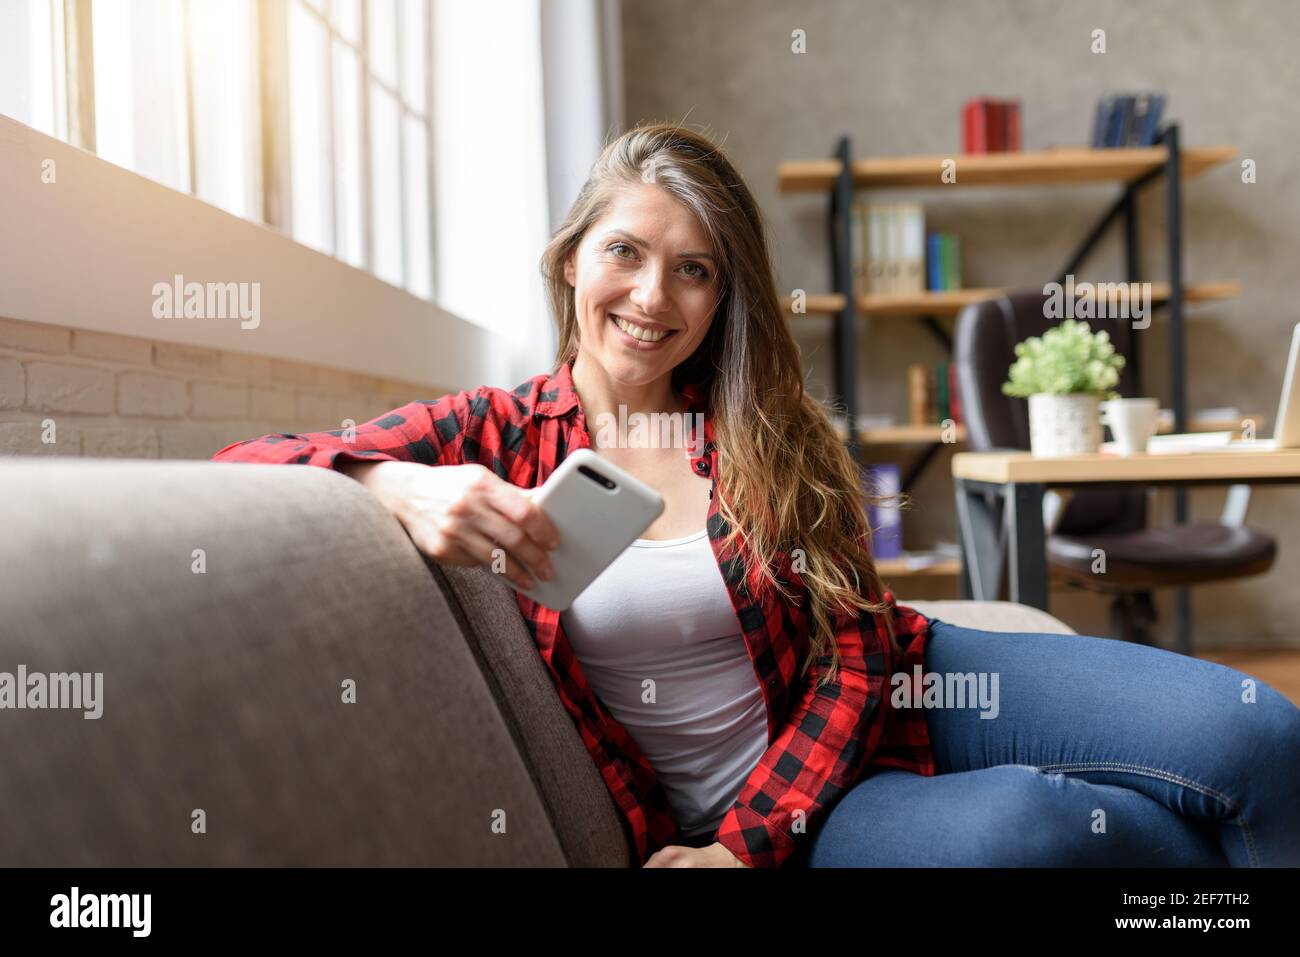 Lächelndes Mädchen, das sich mit ihrem Smartphone auf einem Sofa entspannt Stockfoto